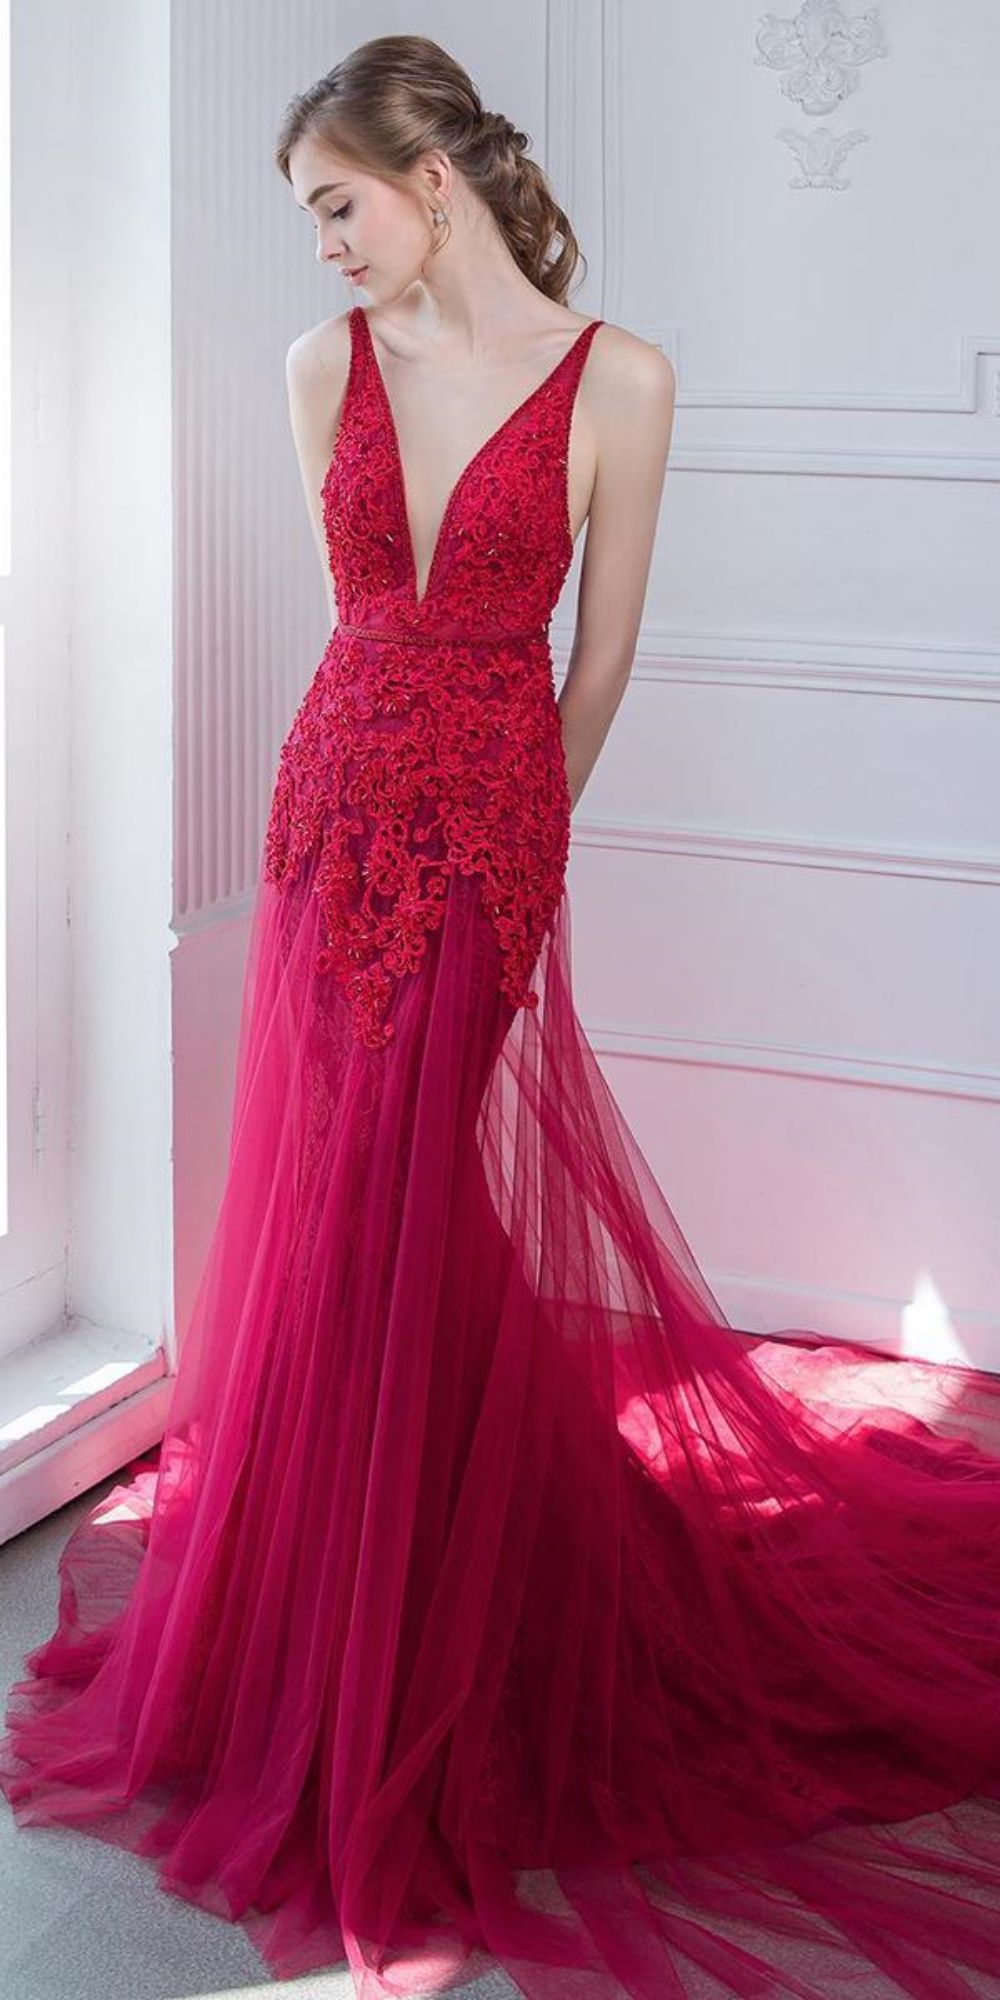 red wedding dresses lace dep v neckline